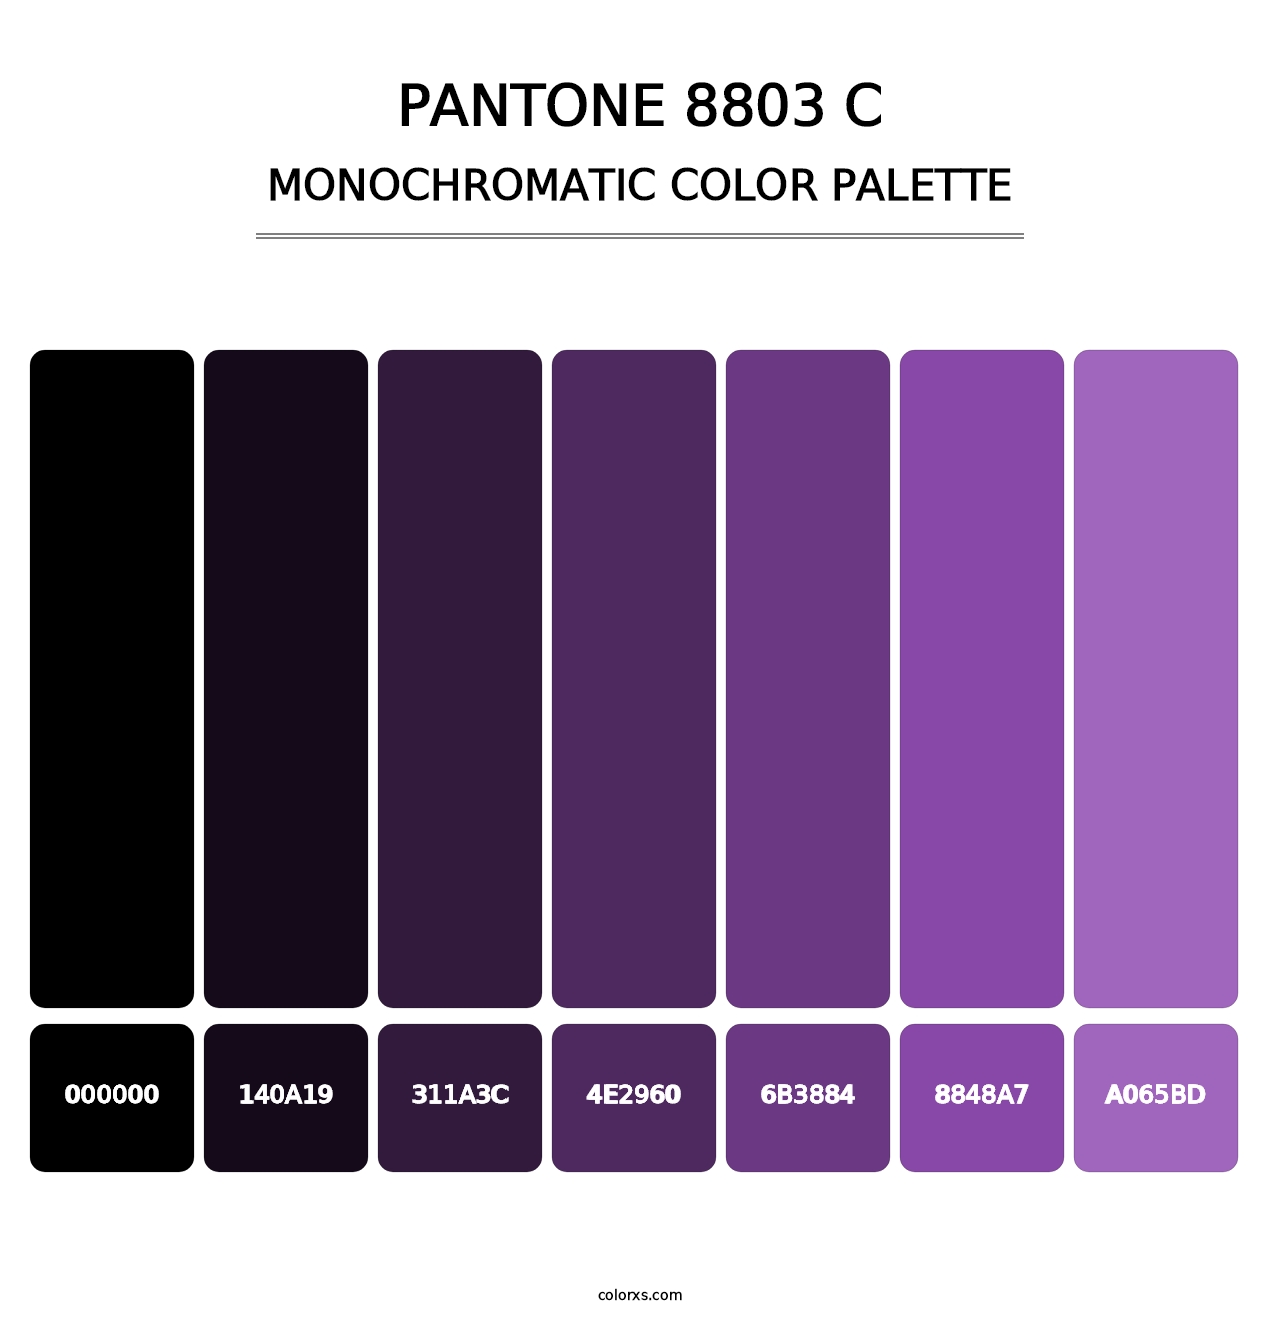 PANTONE 8803 C - Monochromatic Color Palette